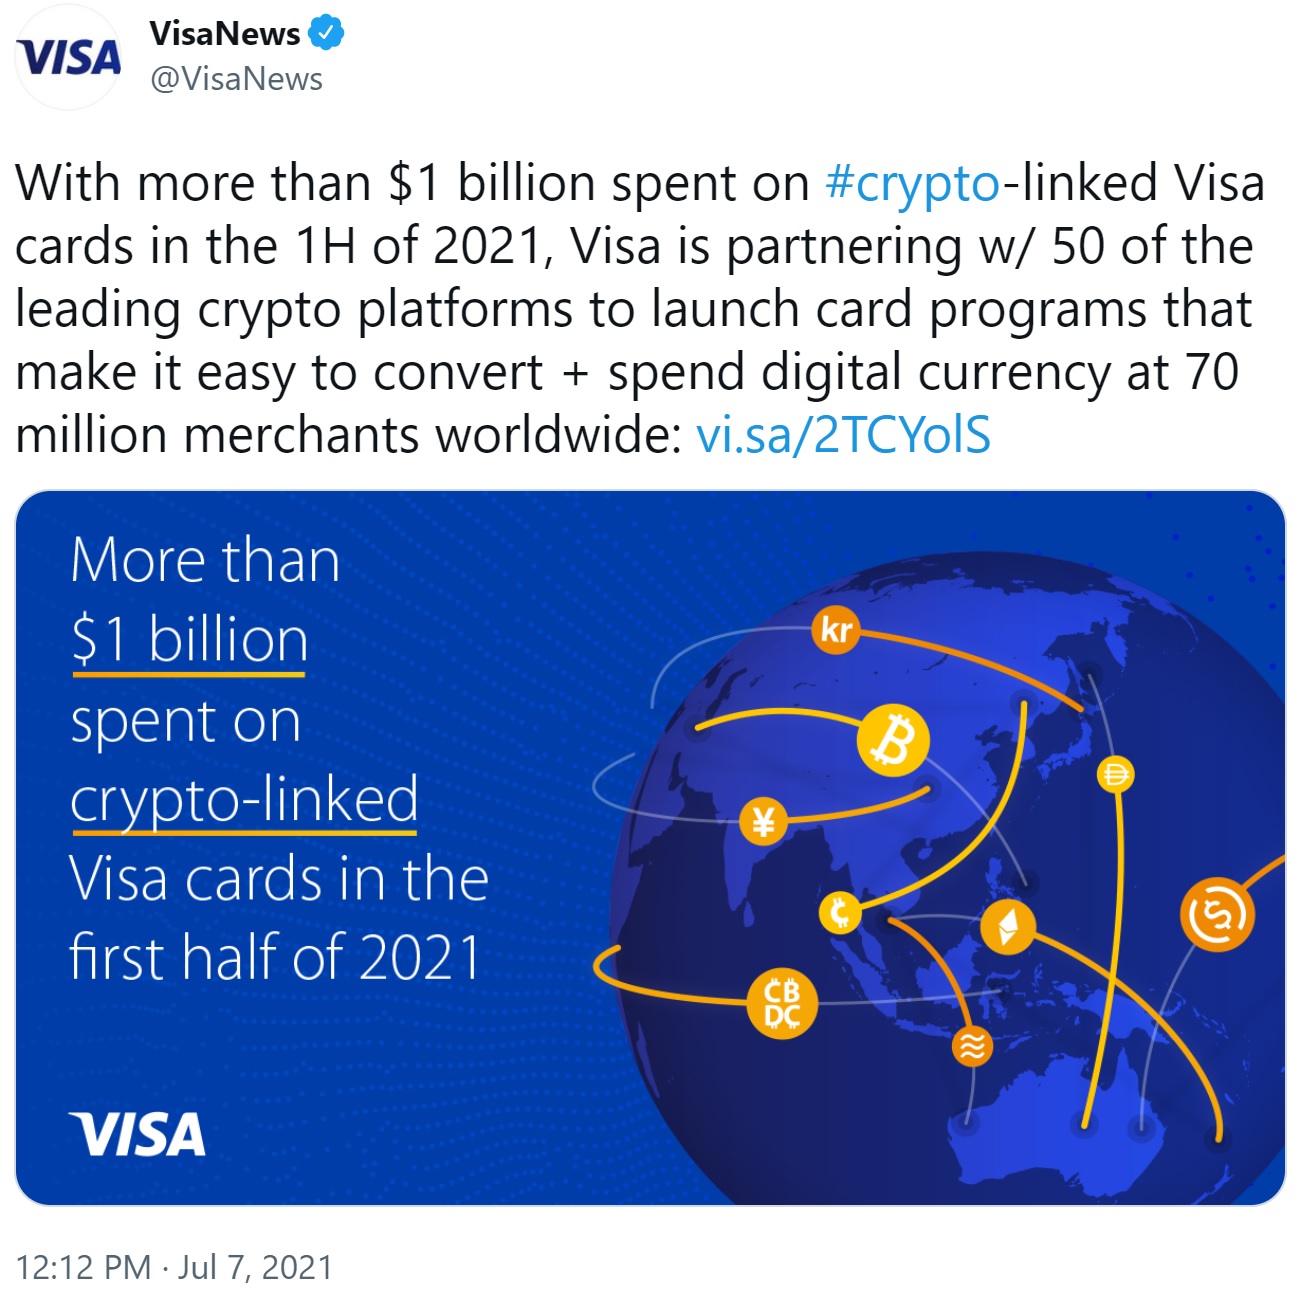 Visa dan 50 Platform Kripto untuk Mengaktifkan Pembayaran Mata Uang Kripto di 70 Juta Pedagang